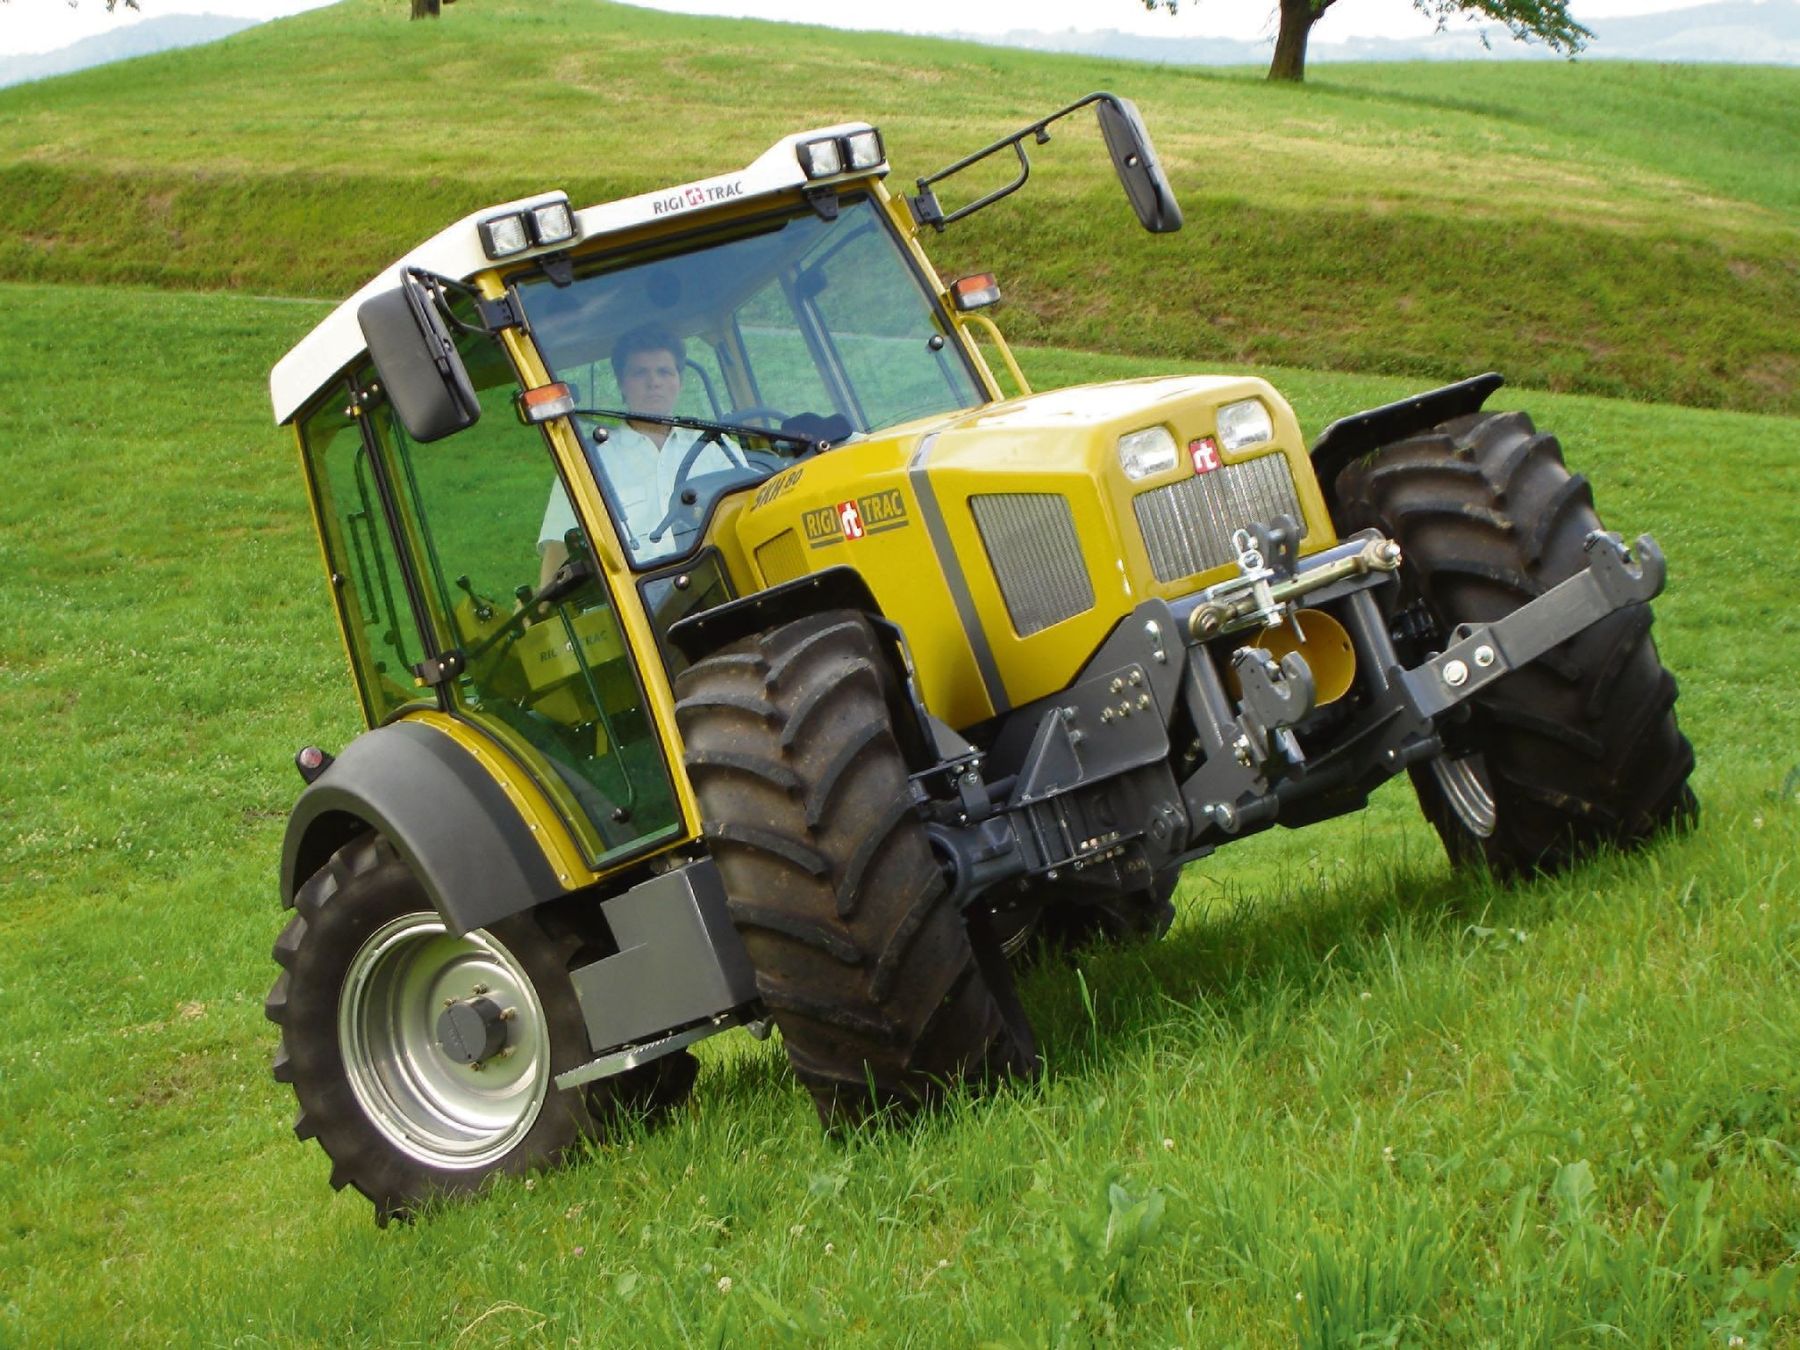 Weist eine gekaufte Sache - wie etwa ein Traktor - Mängel auf, so bestehen Gewährleistungsansprüche. © LK Tirol